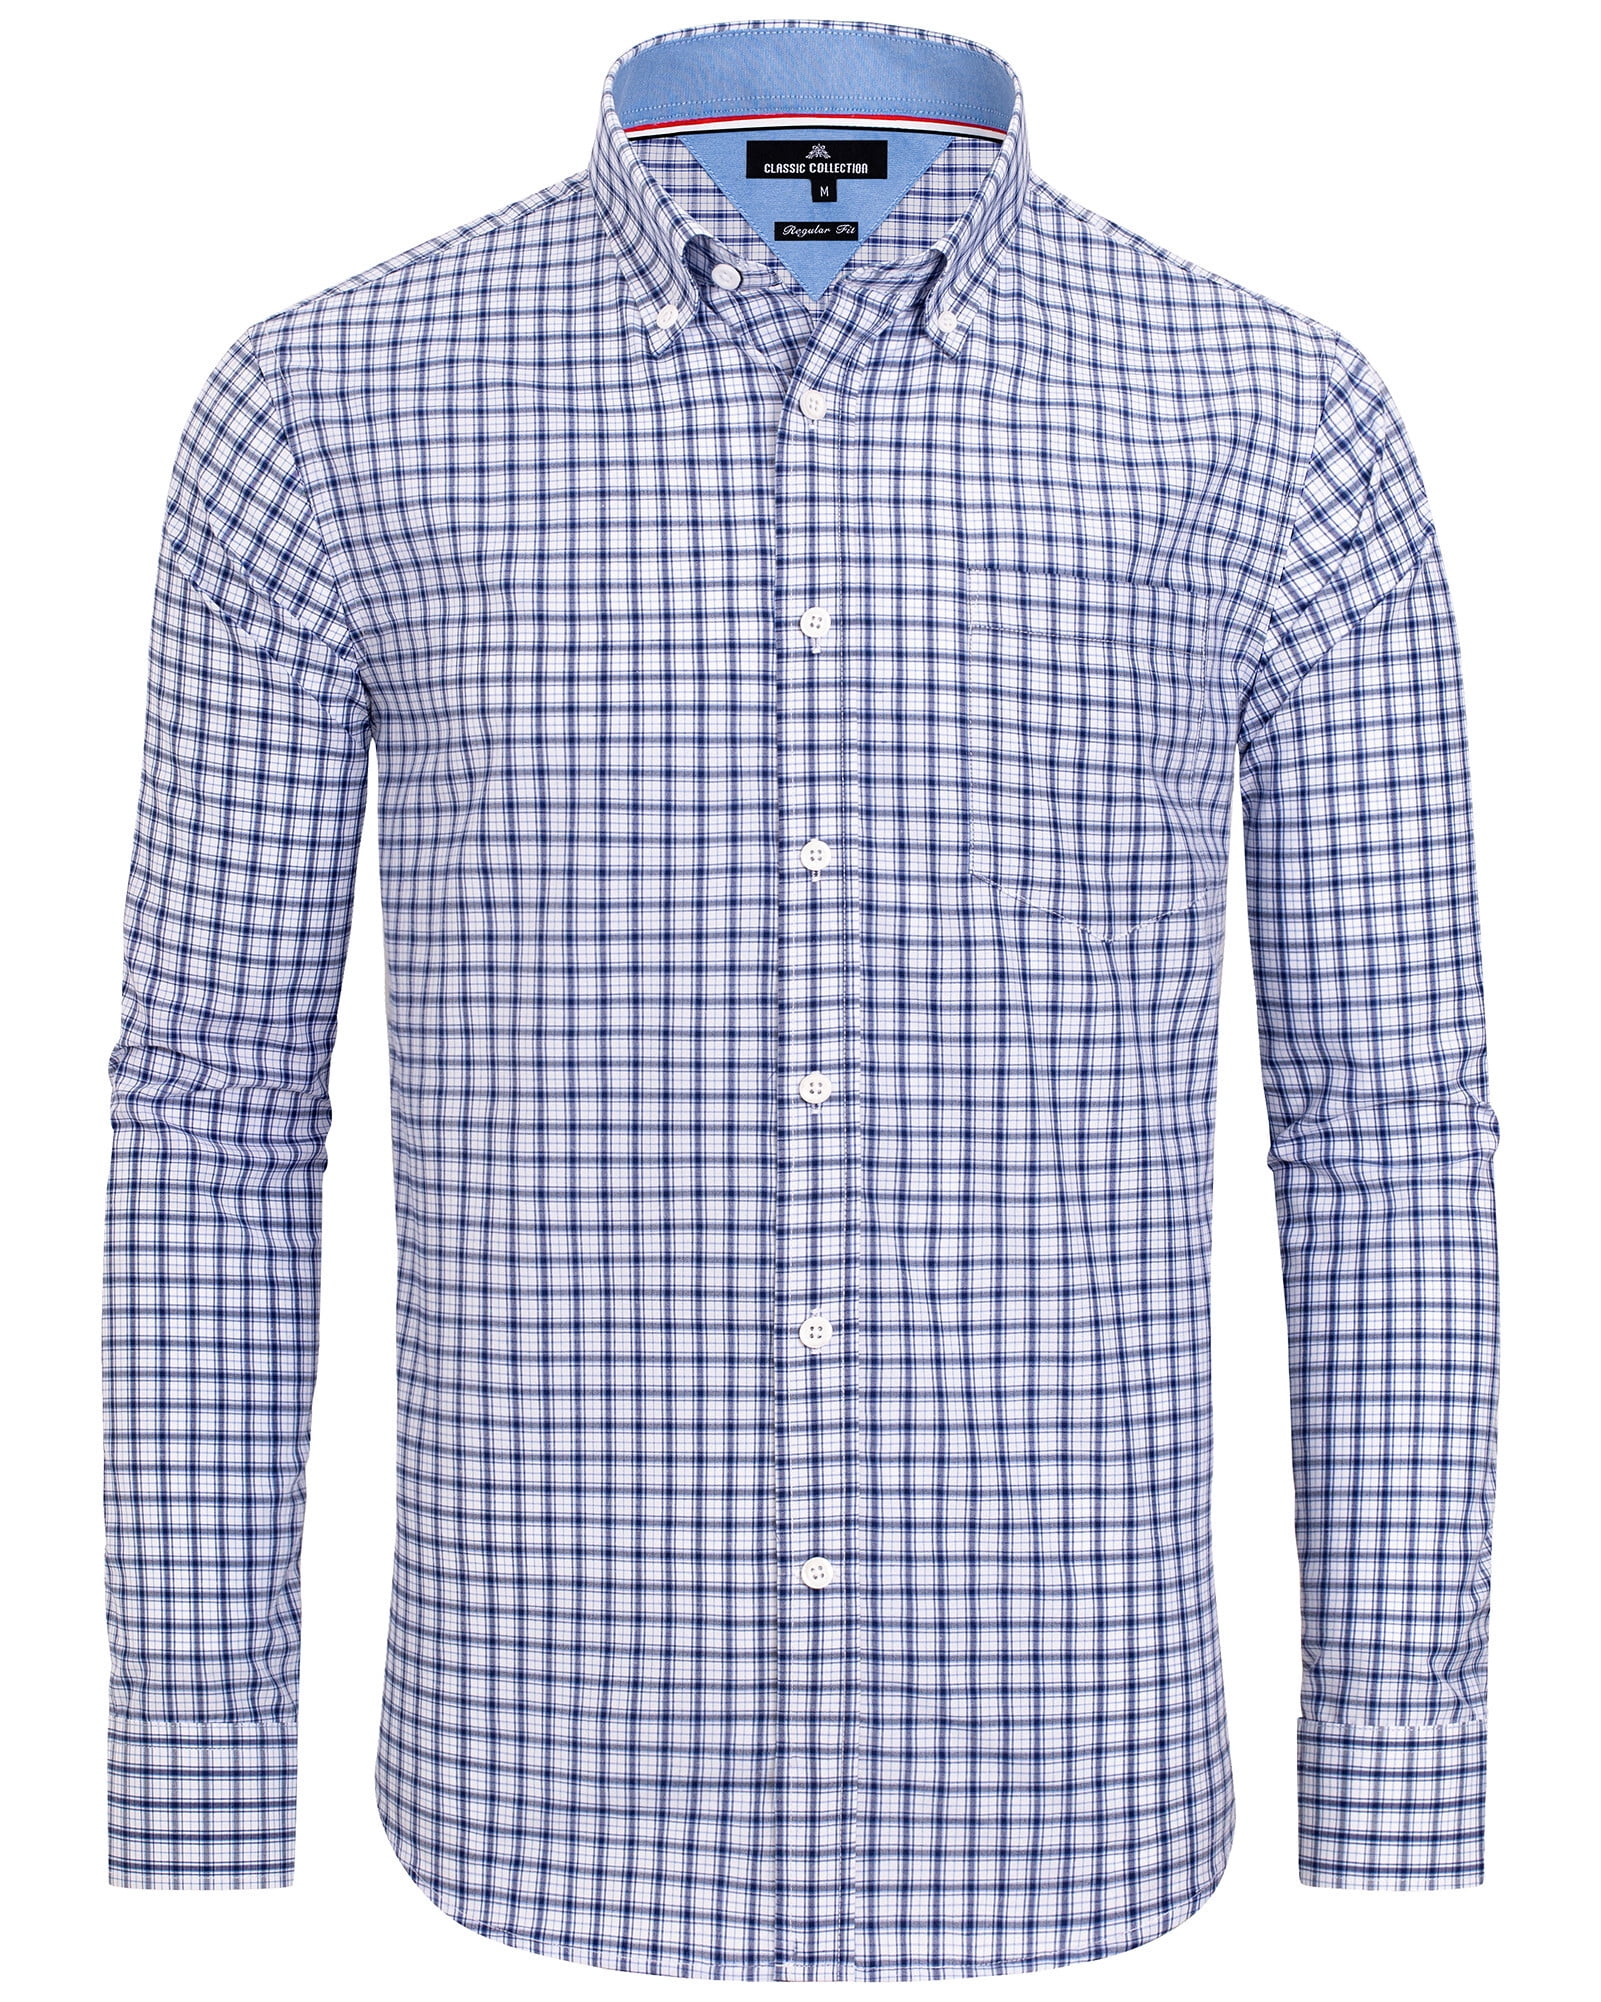 Alimens & Gentle Men's Plaid Button Down Shirts Cotton Long Sleeve ...